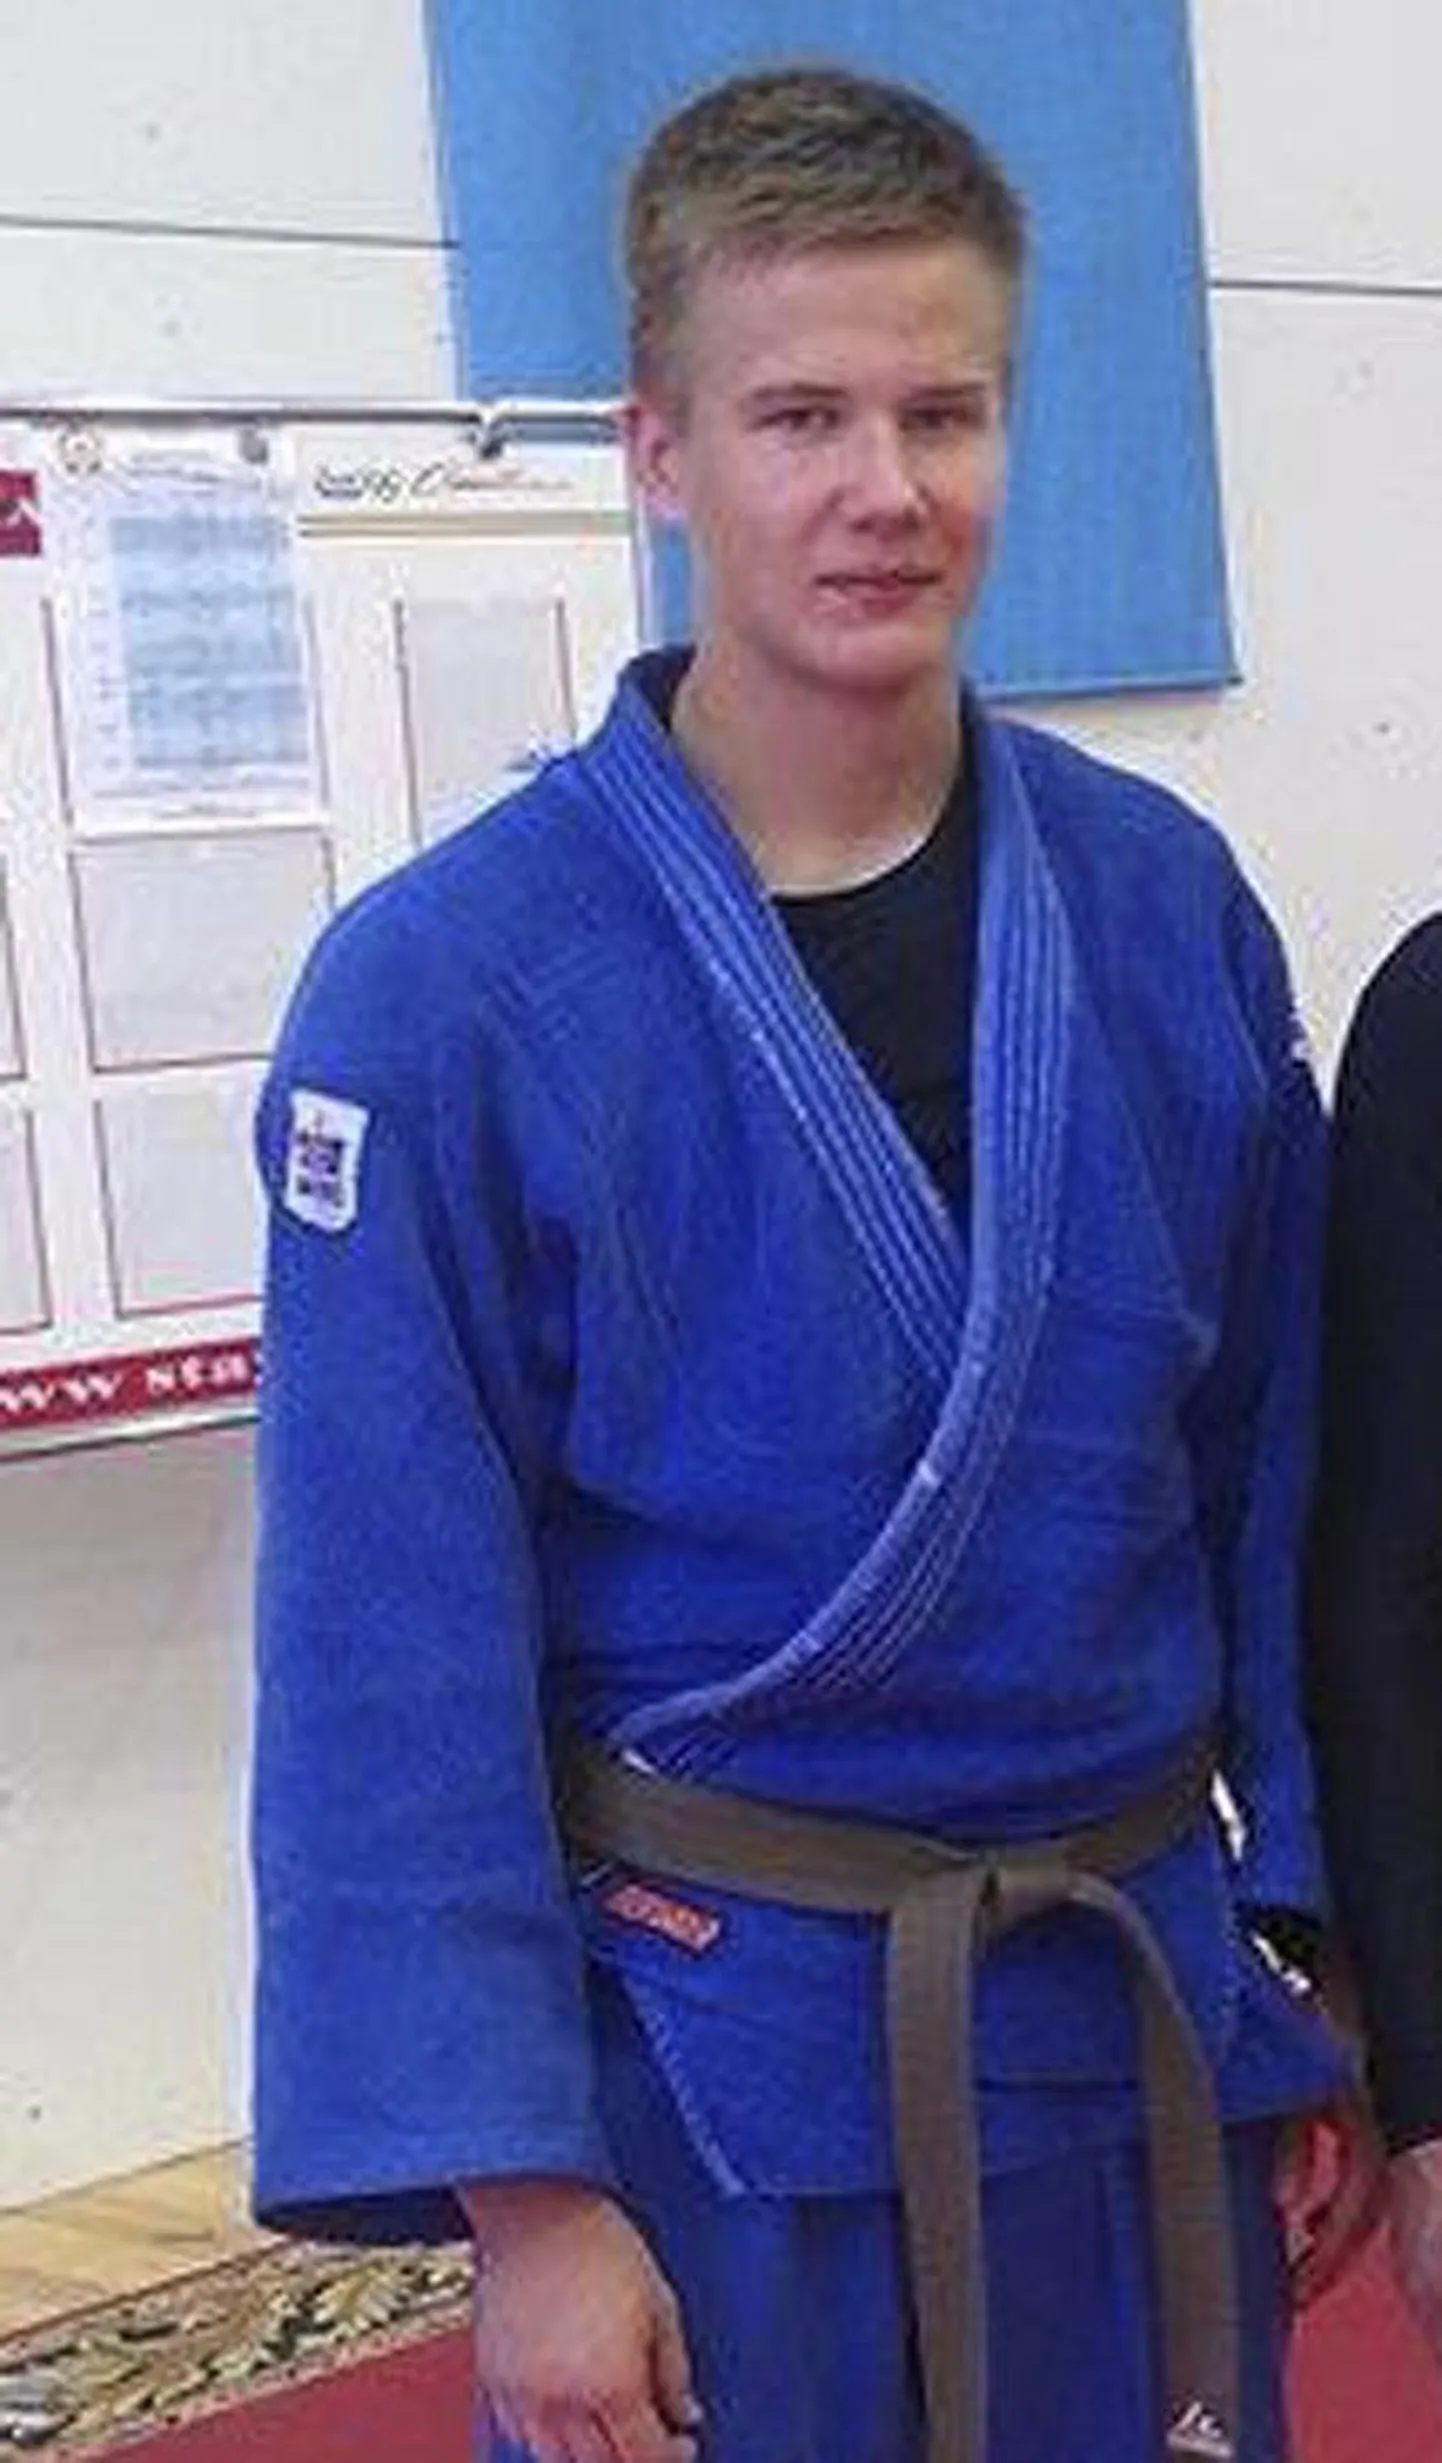 Tallinnas Audentese spordigümnaasiumis treeniv Viljandi spordikooli kasvandik Tanner Saar teenis Eesti judomeistrivõistlustel oma esimese medali täiskasvanute seas.